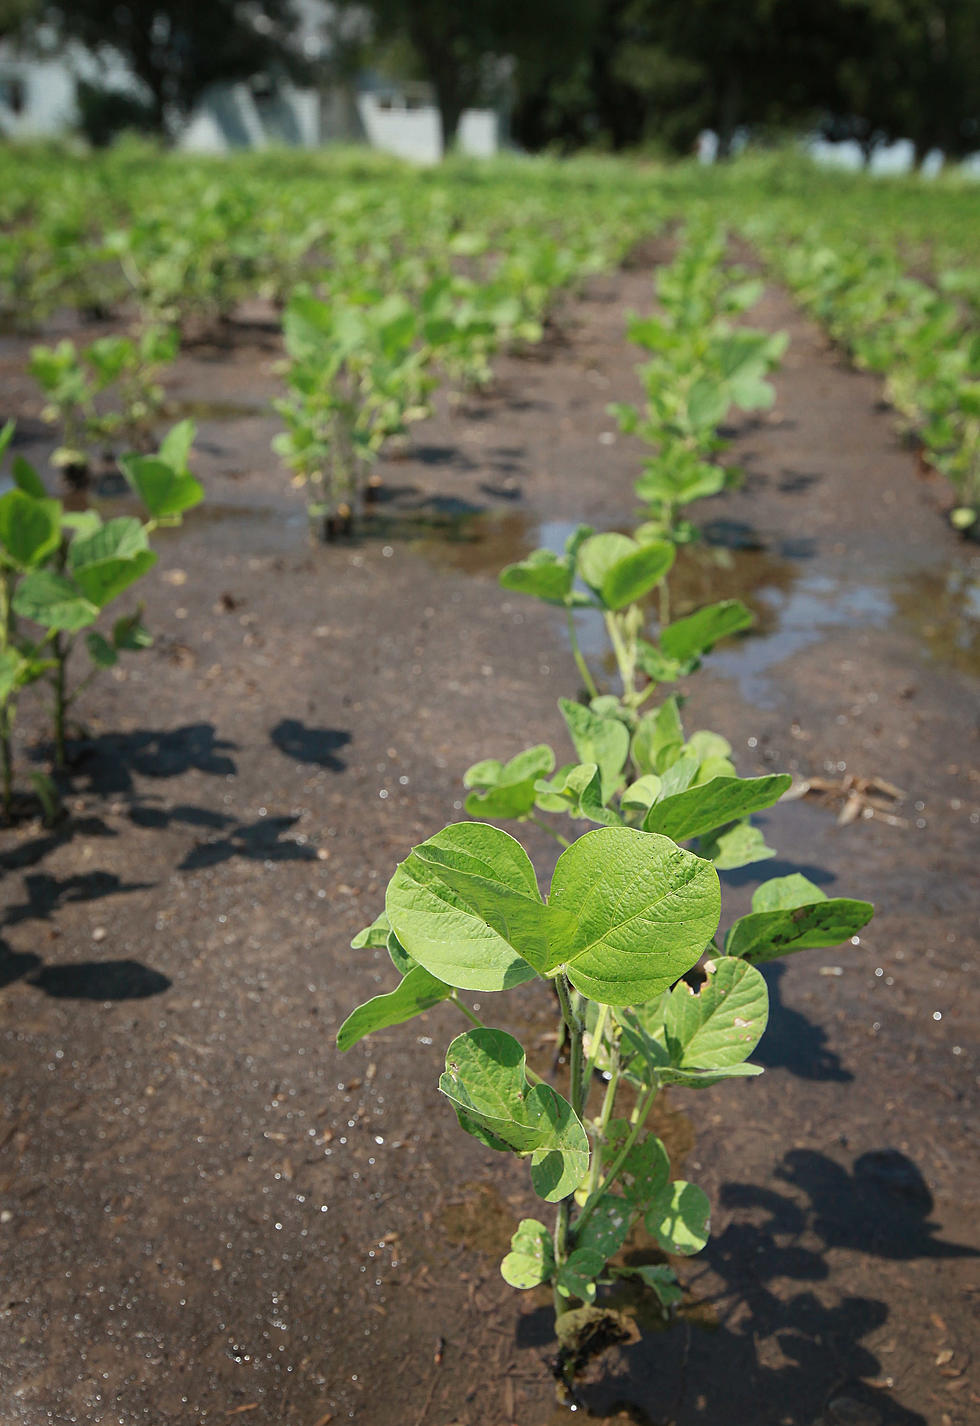 Recent Rain Helps Soybean Crop But Not Corn  [AUDIO]